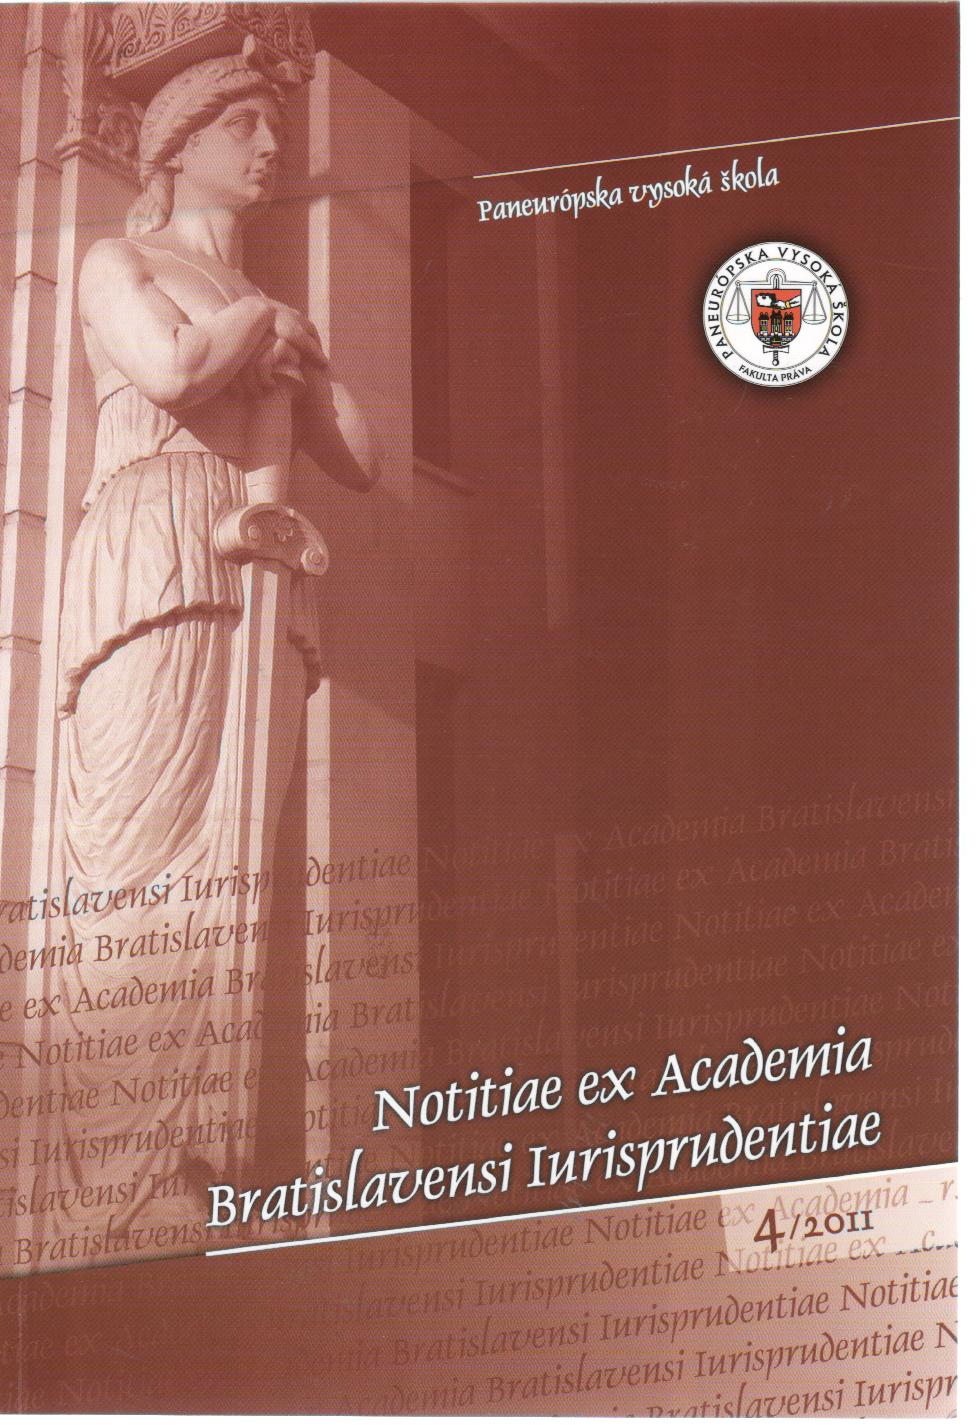 Notitiae ex Academia Bratislavensi Iurisprudentiae 4/2011